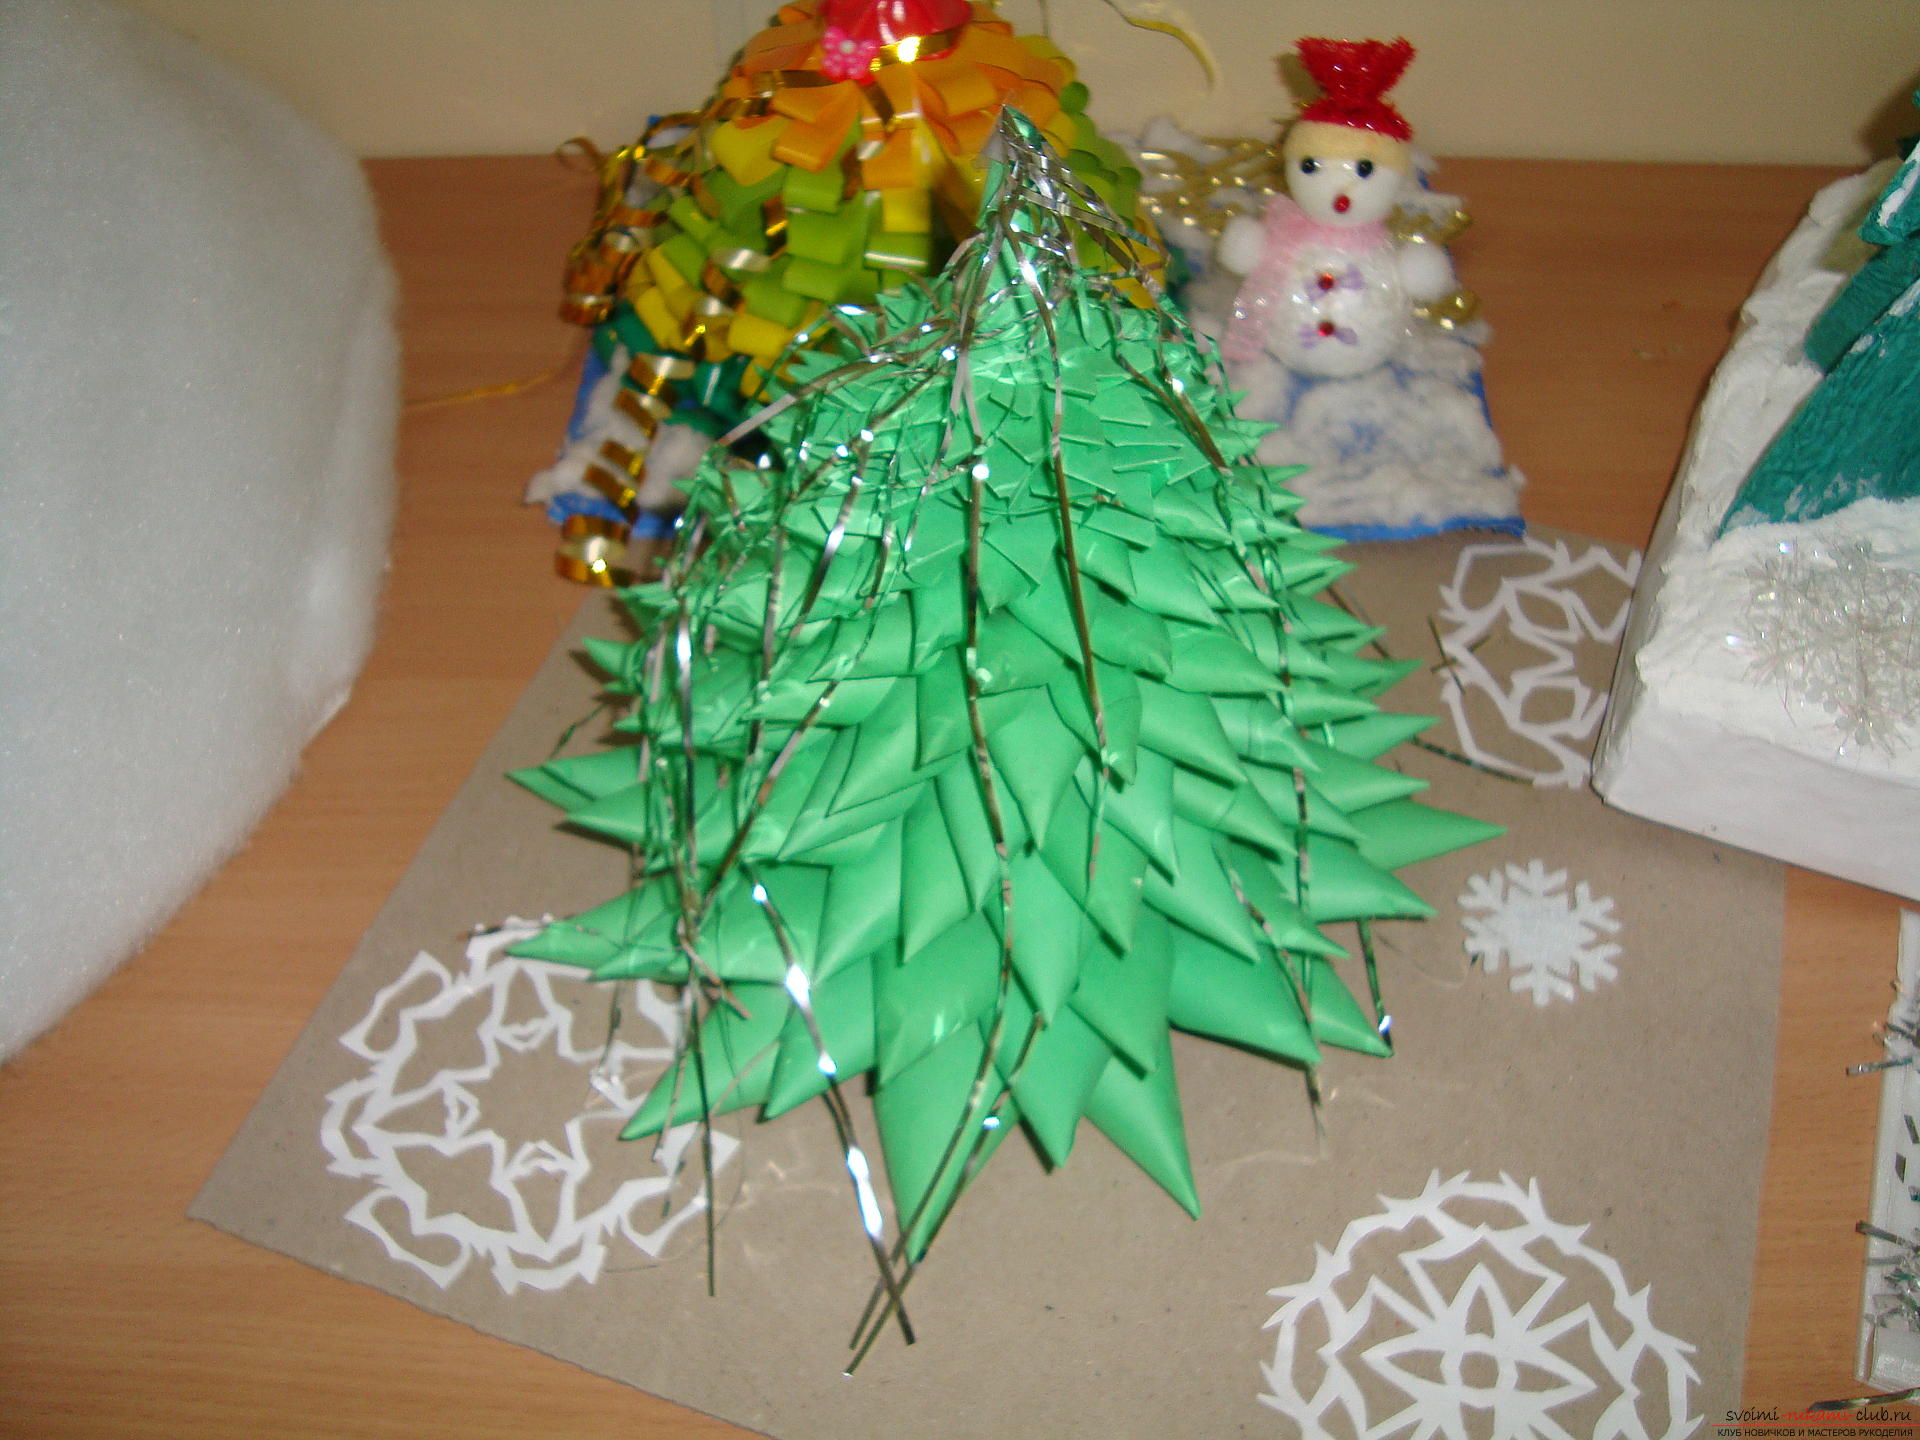 L'idea di creare un albero di Natale luminoso dal cartone stesso